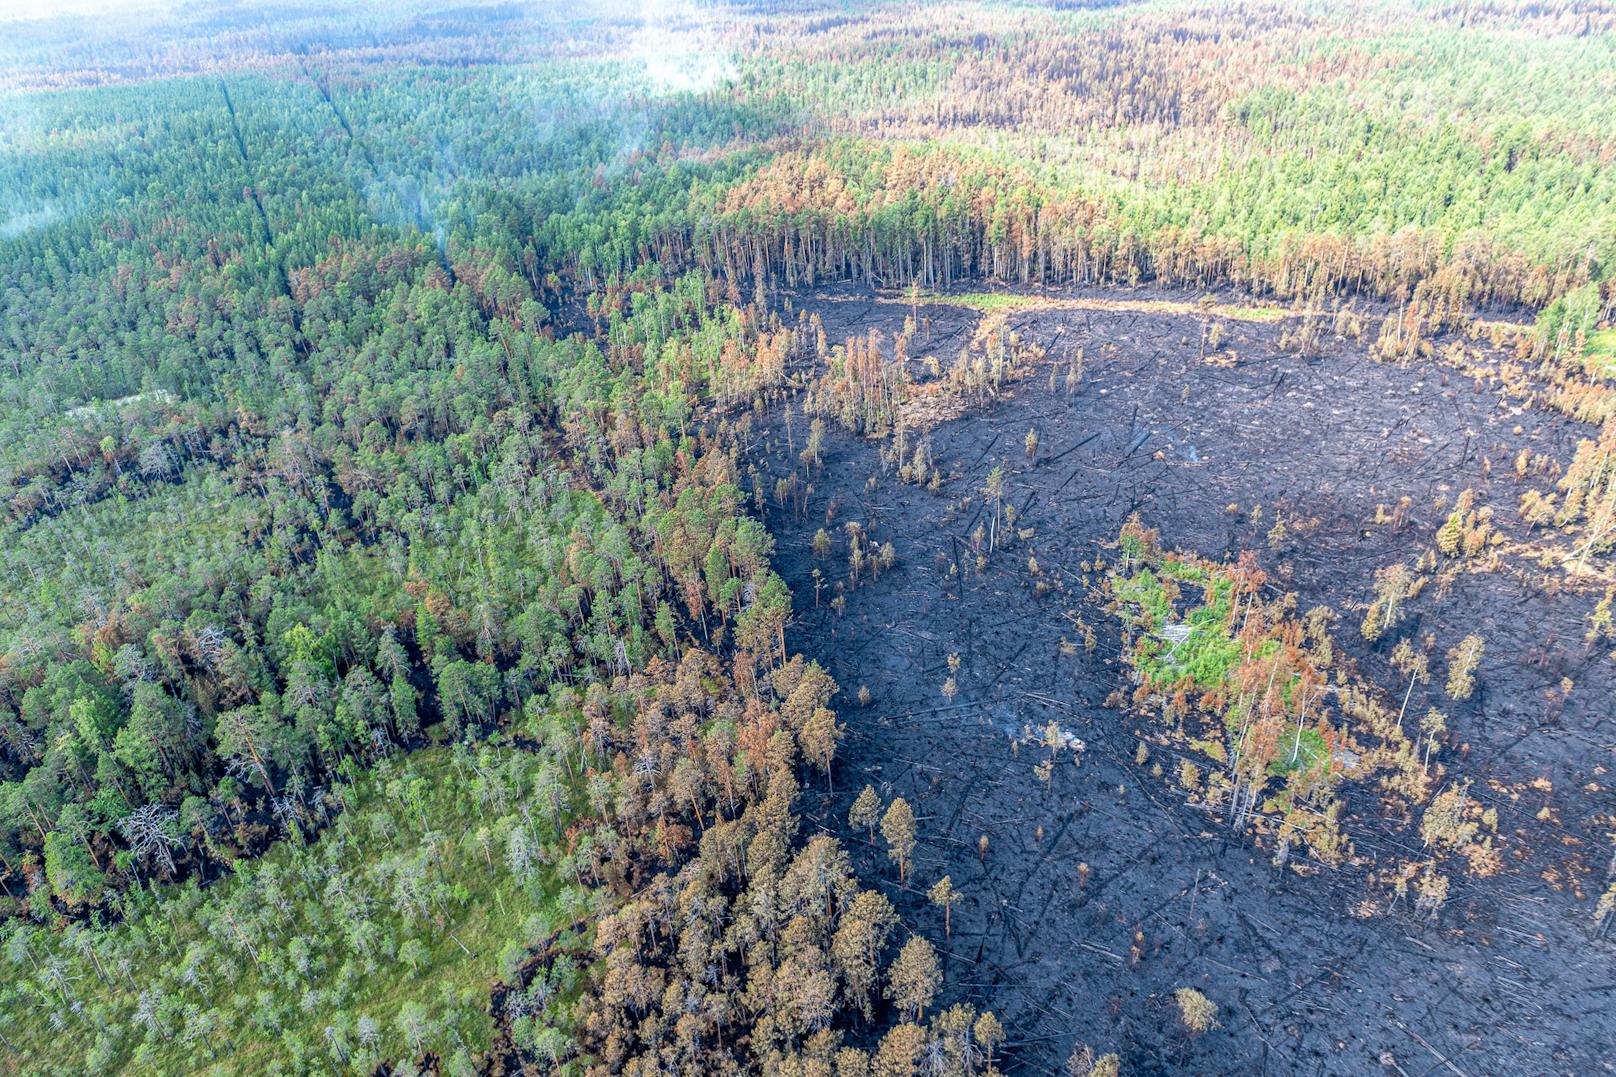 Bis Mitte Juli 2020 waren durch eine Rekord-Hitzewelle alleine im Nordwesten Sibiriens mehr als 240 Waldbrände ausgebrochen